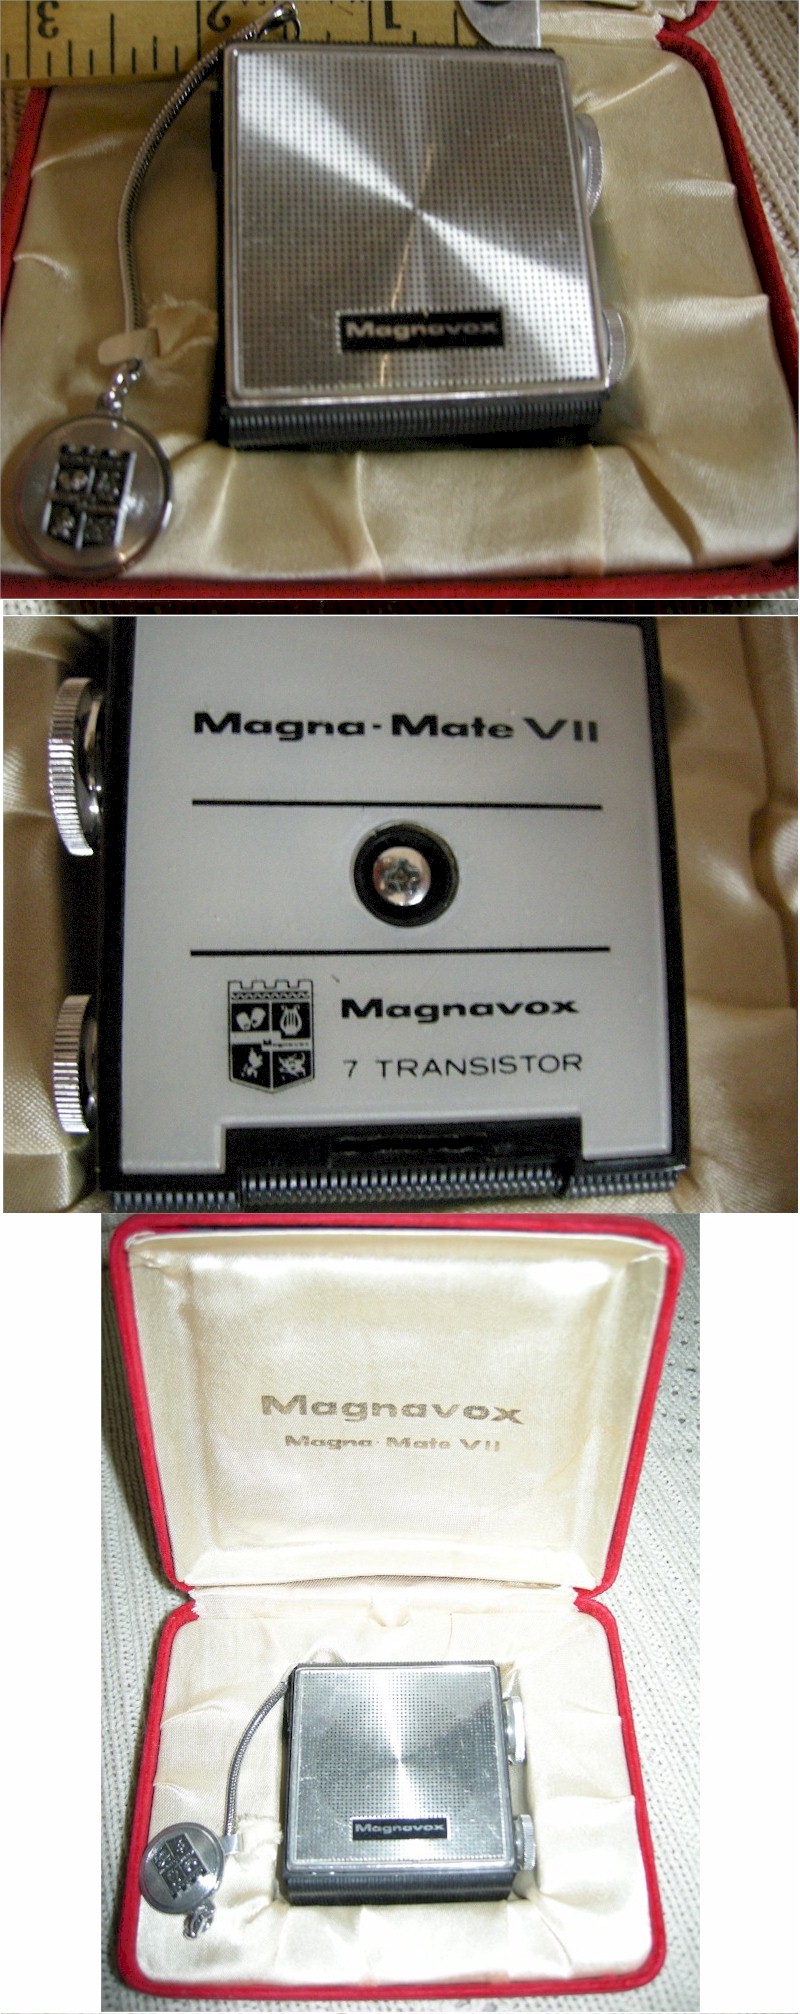 Magnavox Magna-Mite VII 